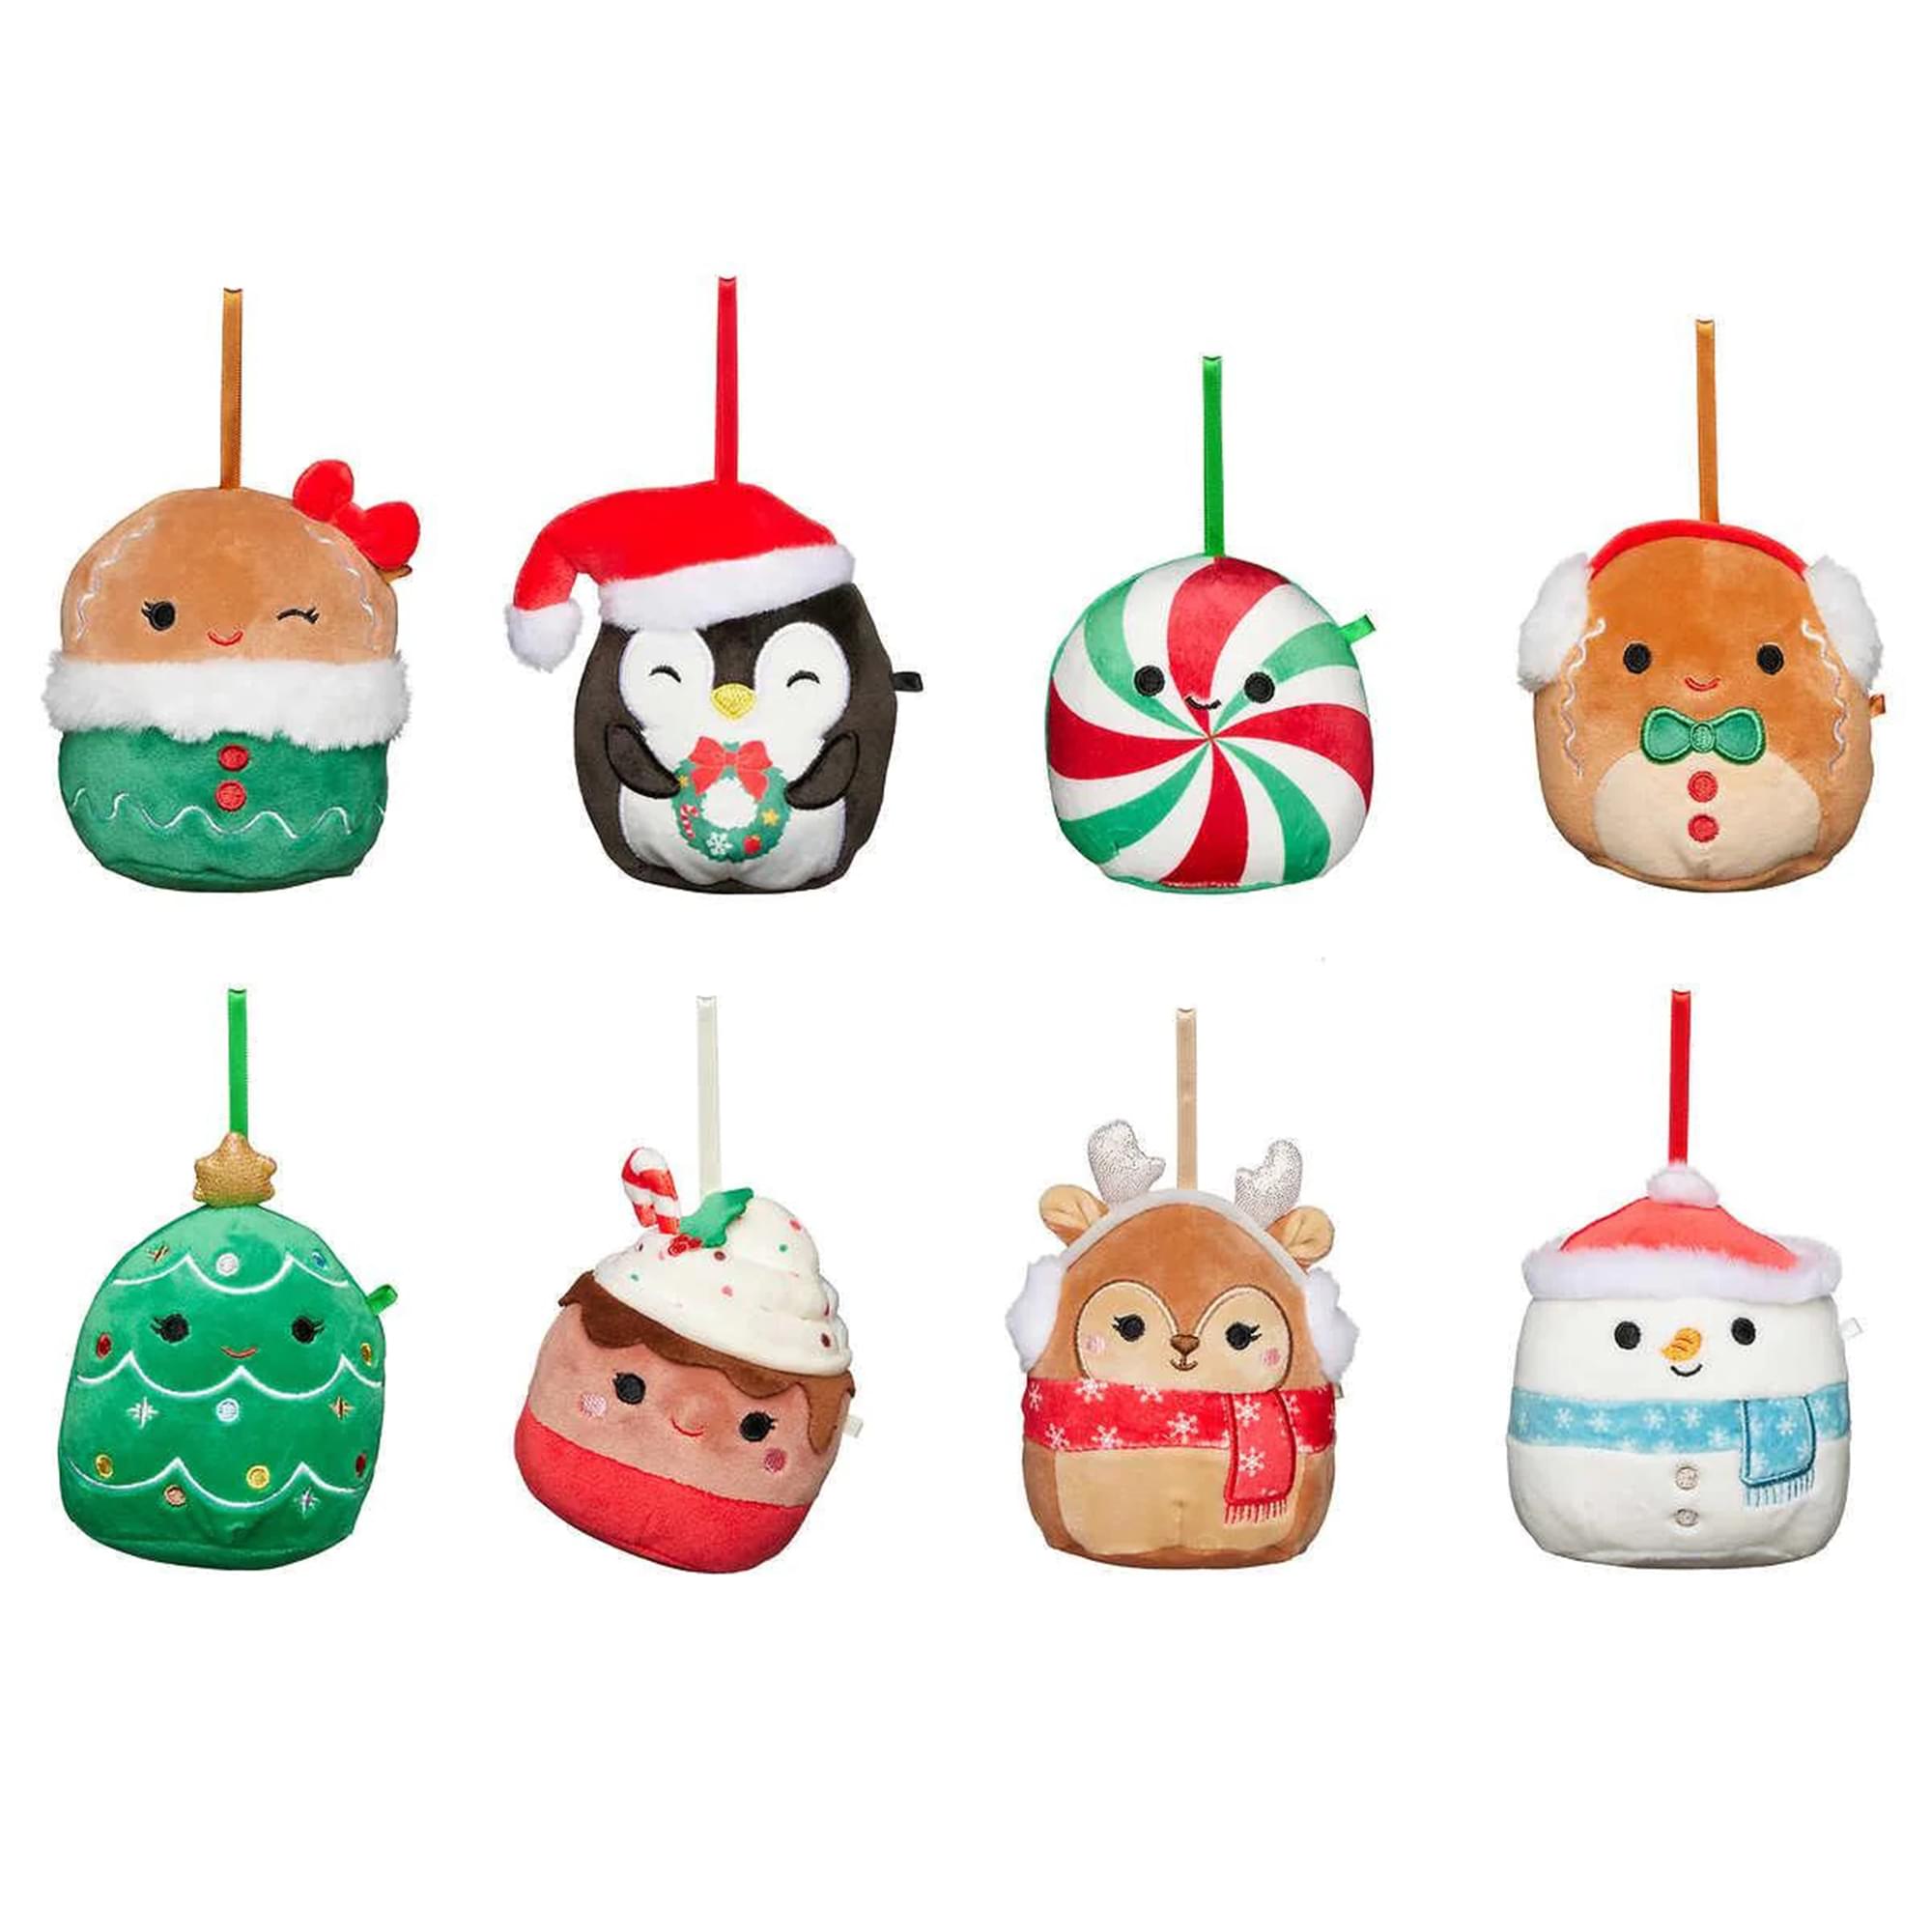 Costco squishmallow ornaments : r/squishmallow